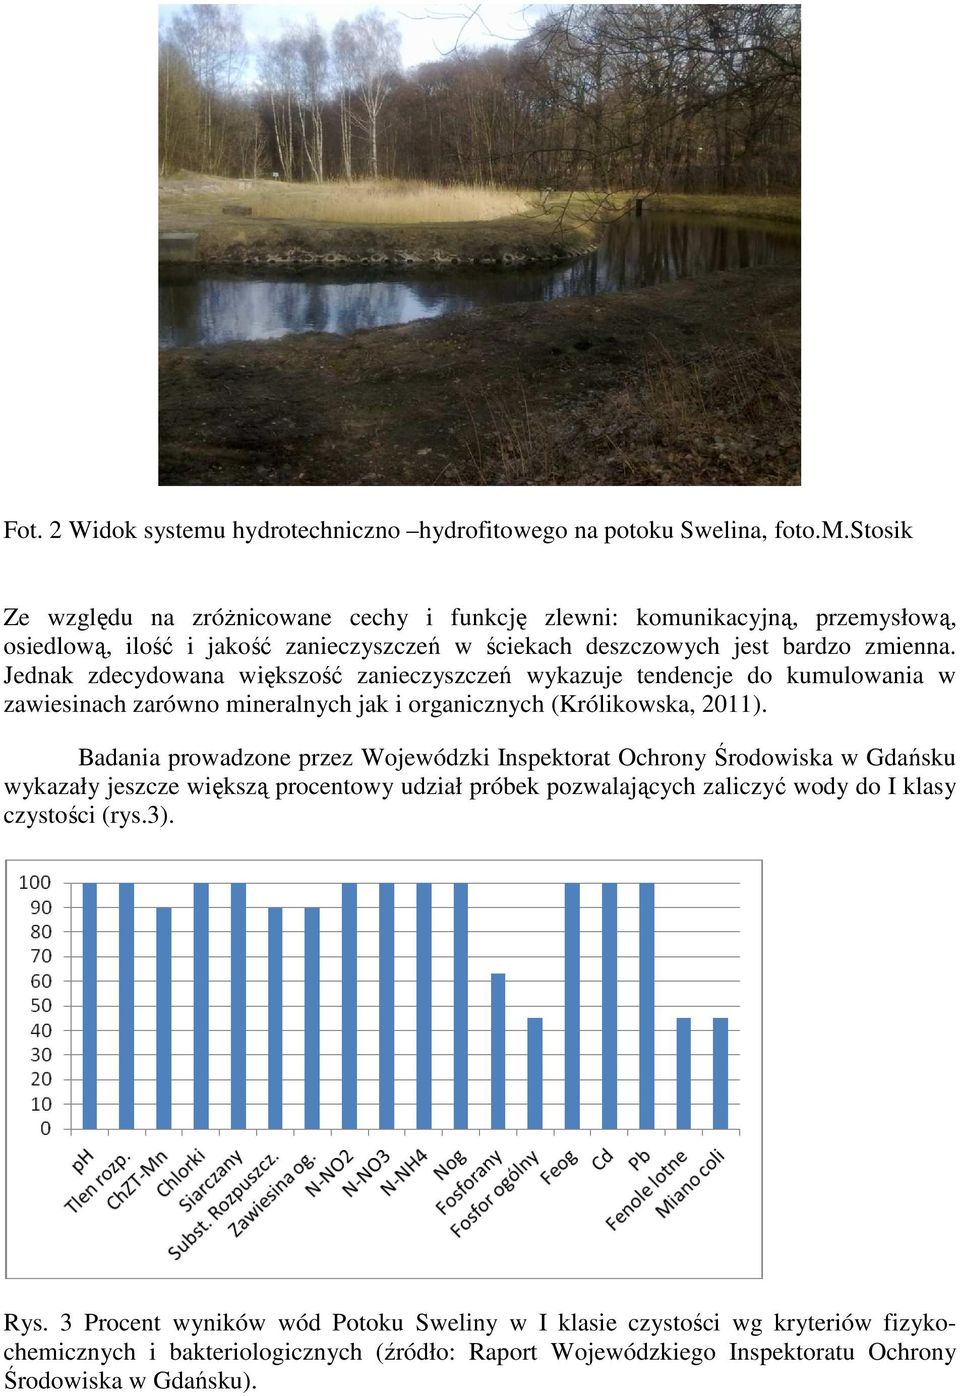 Badania prowadzone przez Wojewódzki Inspektorat Ochrony Środowiska w Gdańsku wykazały jeszcze większą procentowy udział próbek pozwalających zaliczyć wody do I klasy czystości (rys.3). Rys.